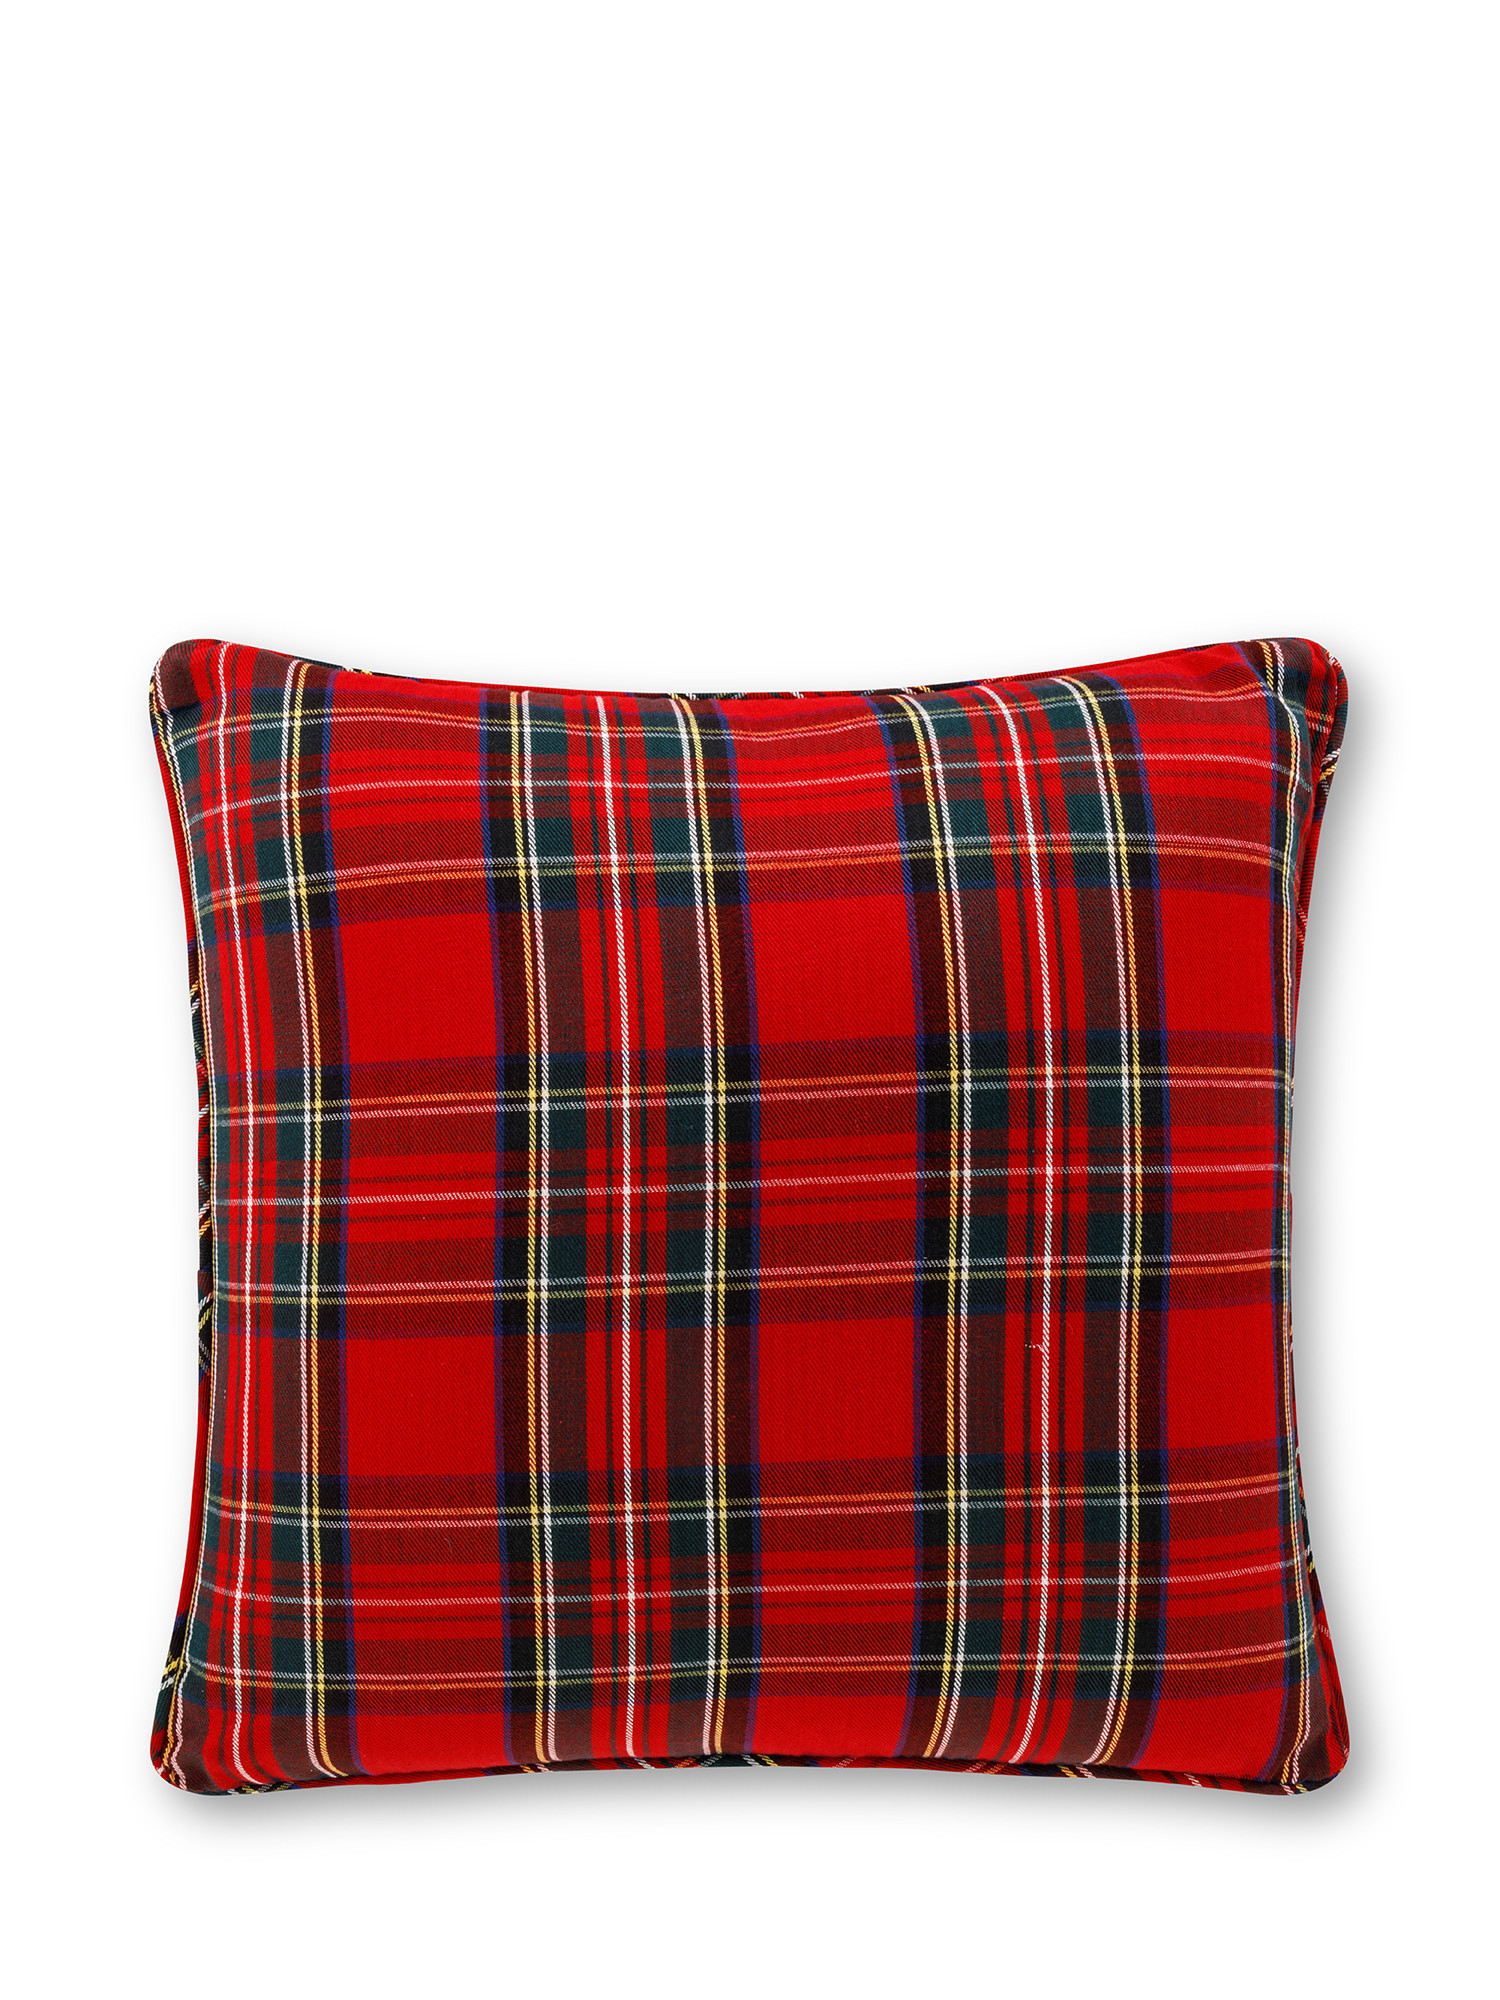 Tartan cushion 45x45 cm, Red, large image number 0